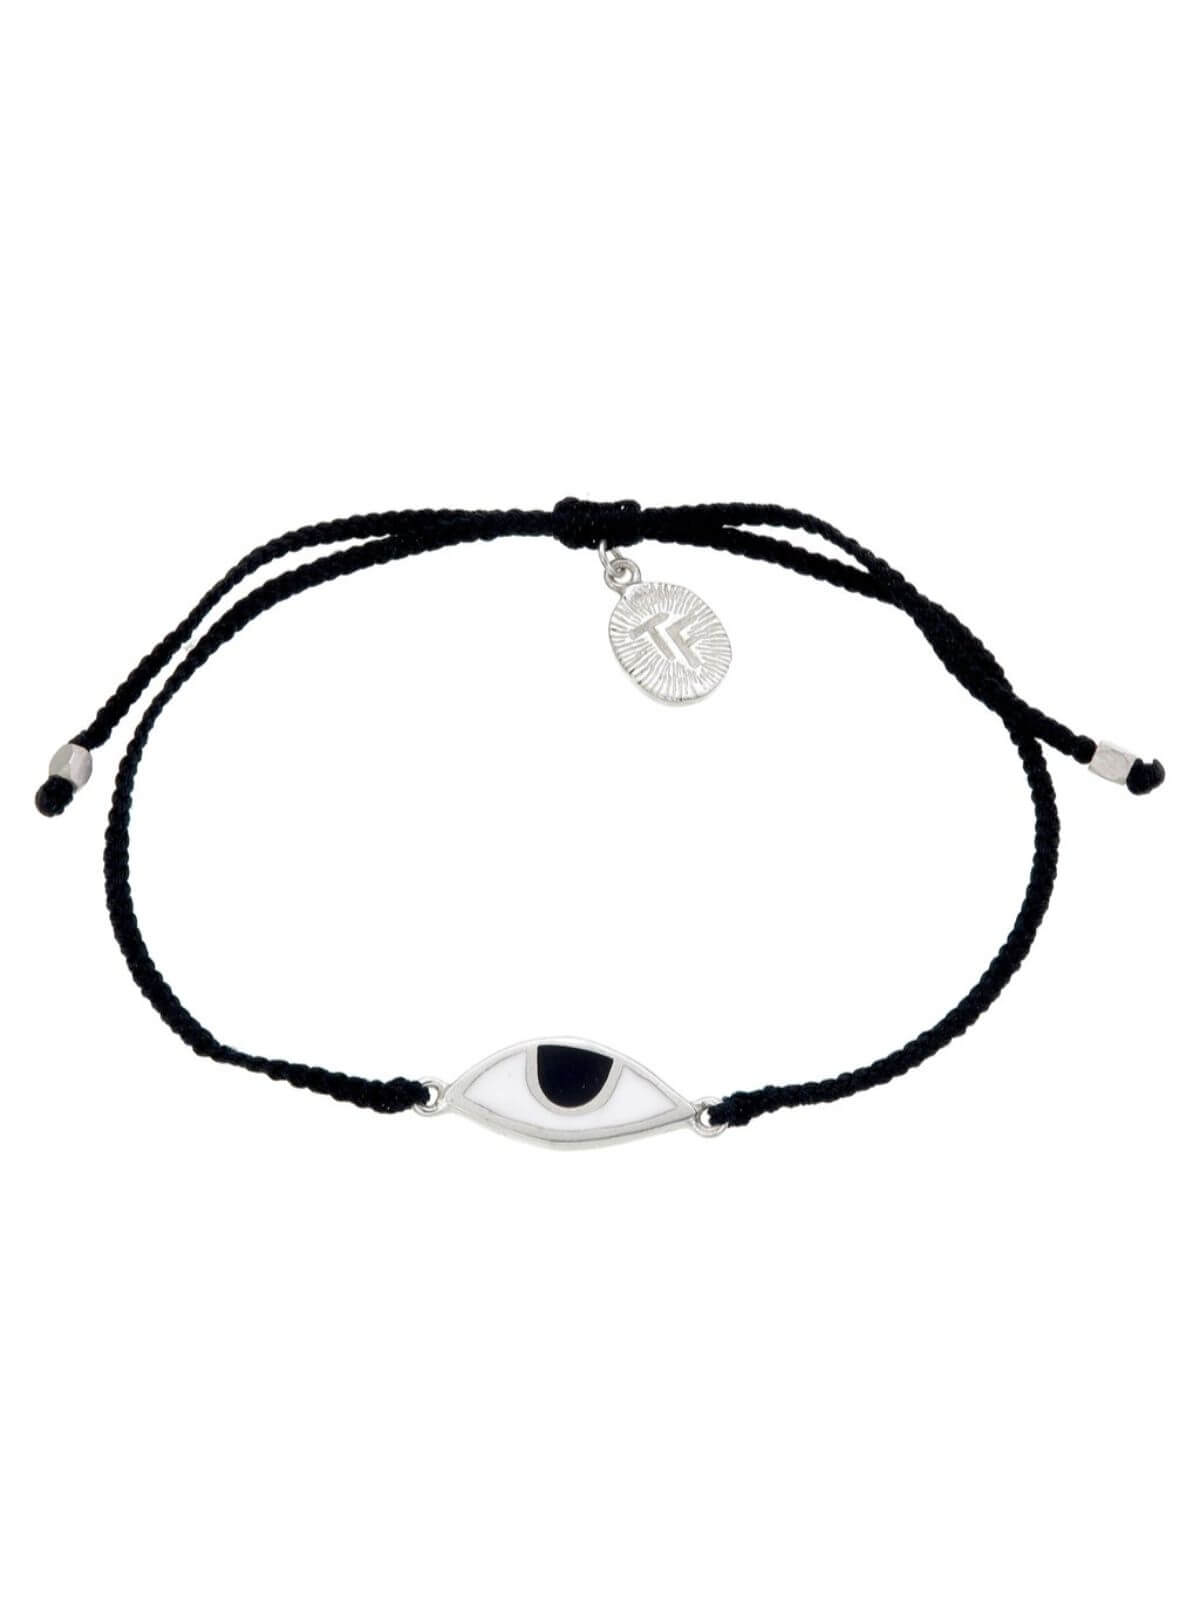 Woven Third Eye Bracelet | Silver - Black